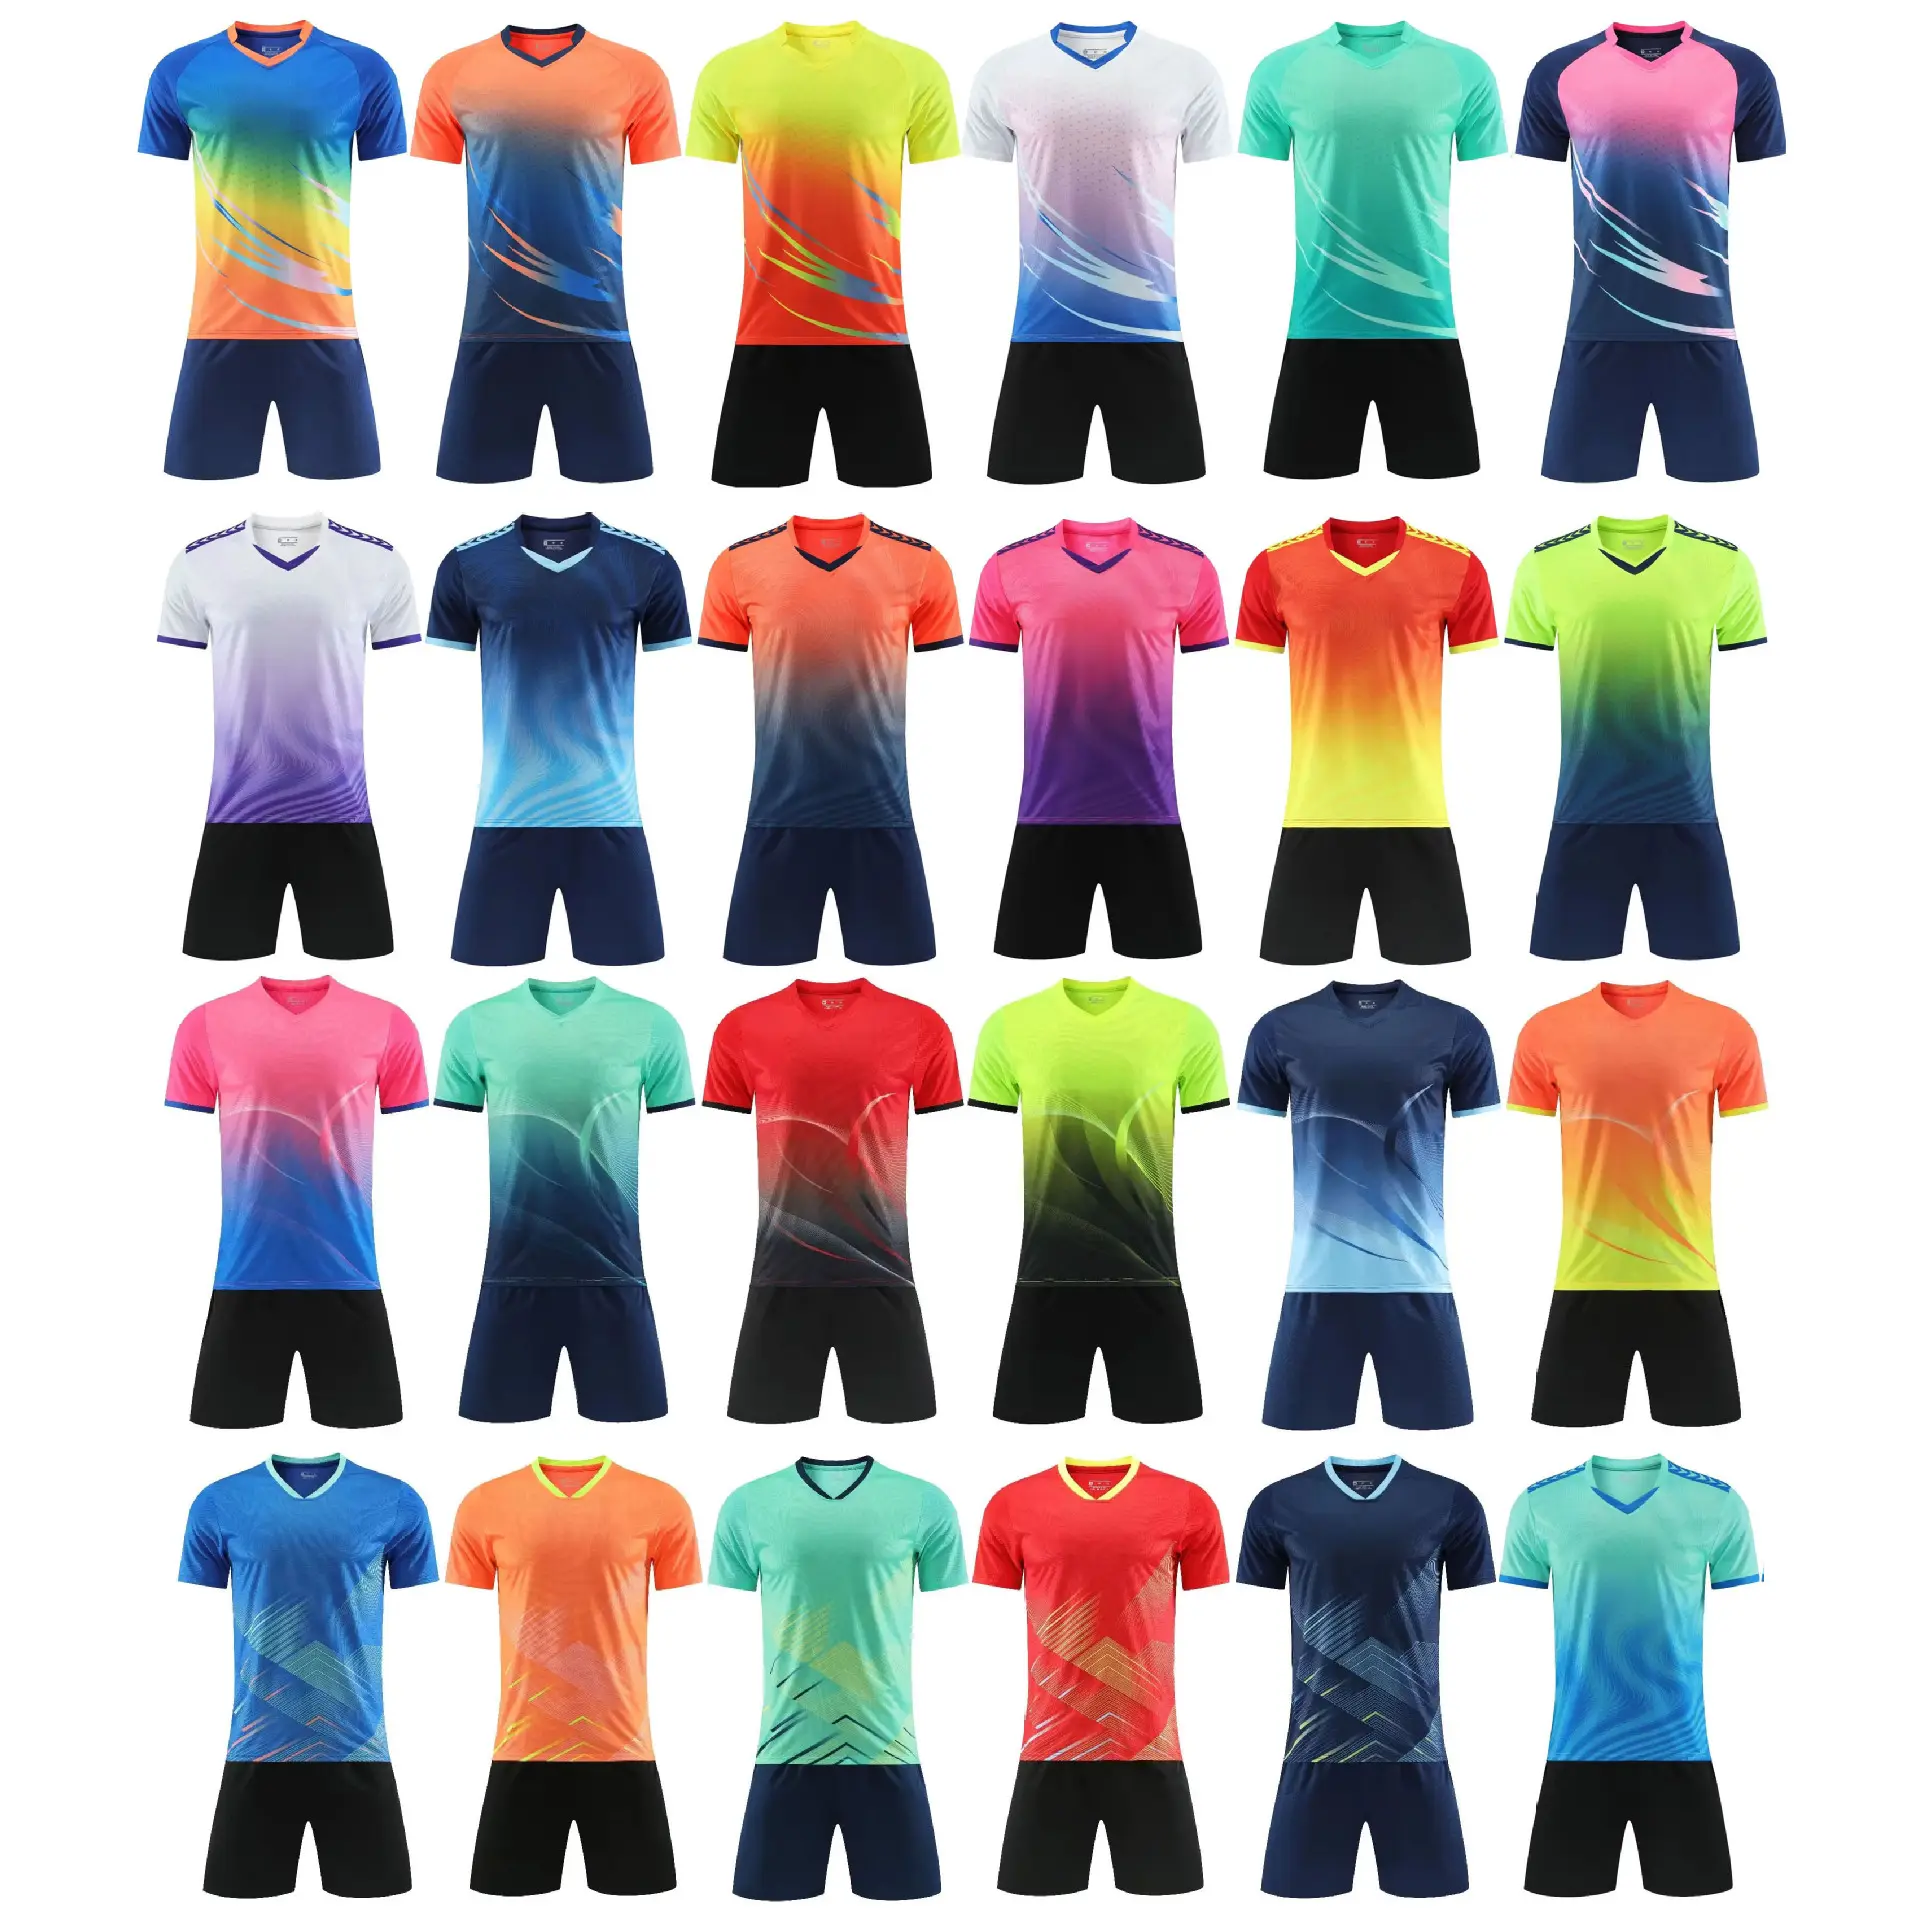 Camisa de futebol personalizada de alta qualidade, camisa esportiva com nome da equipe e logotipo personalizado, camisas esportivas personalizadas